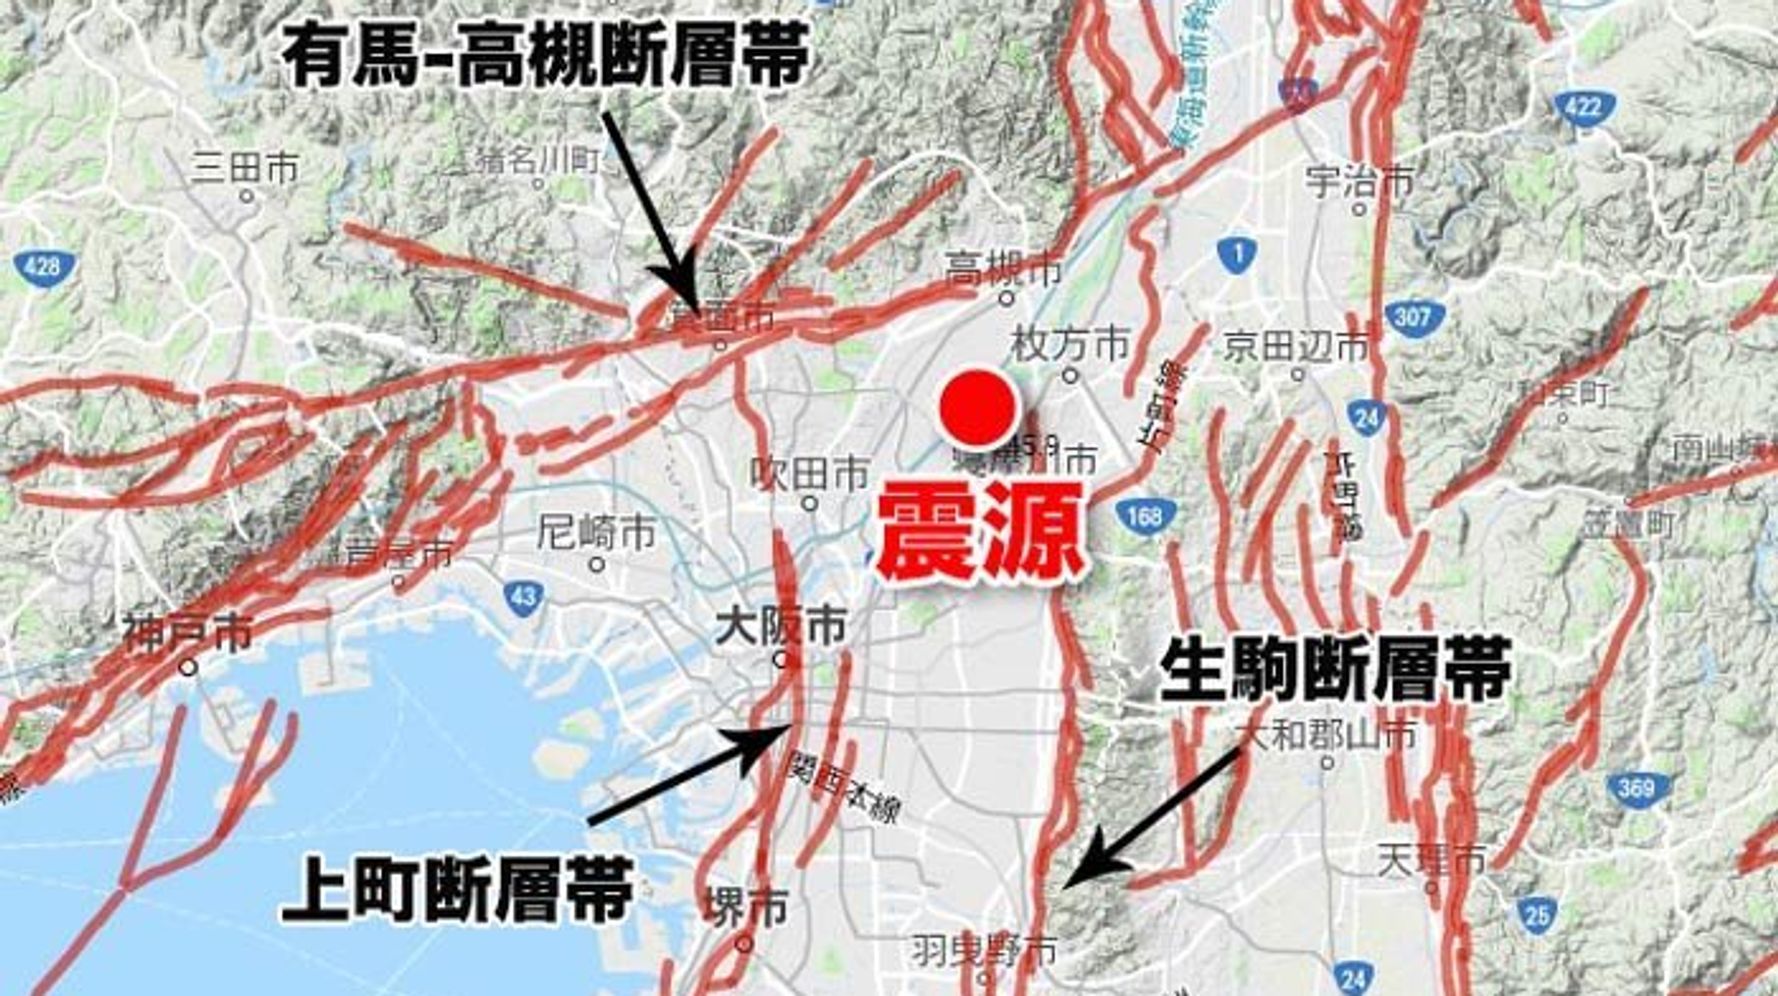 大阪で震度6弱の地震 南海トラフとの関連は ハフポスト